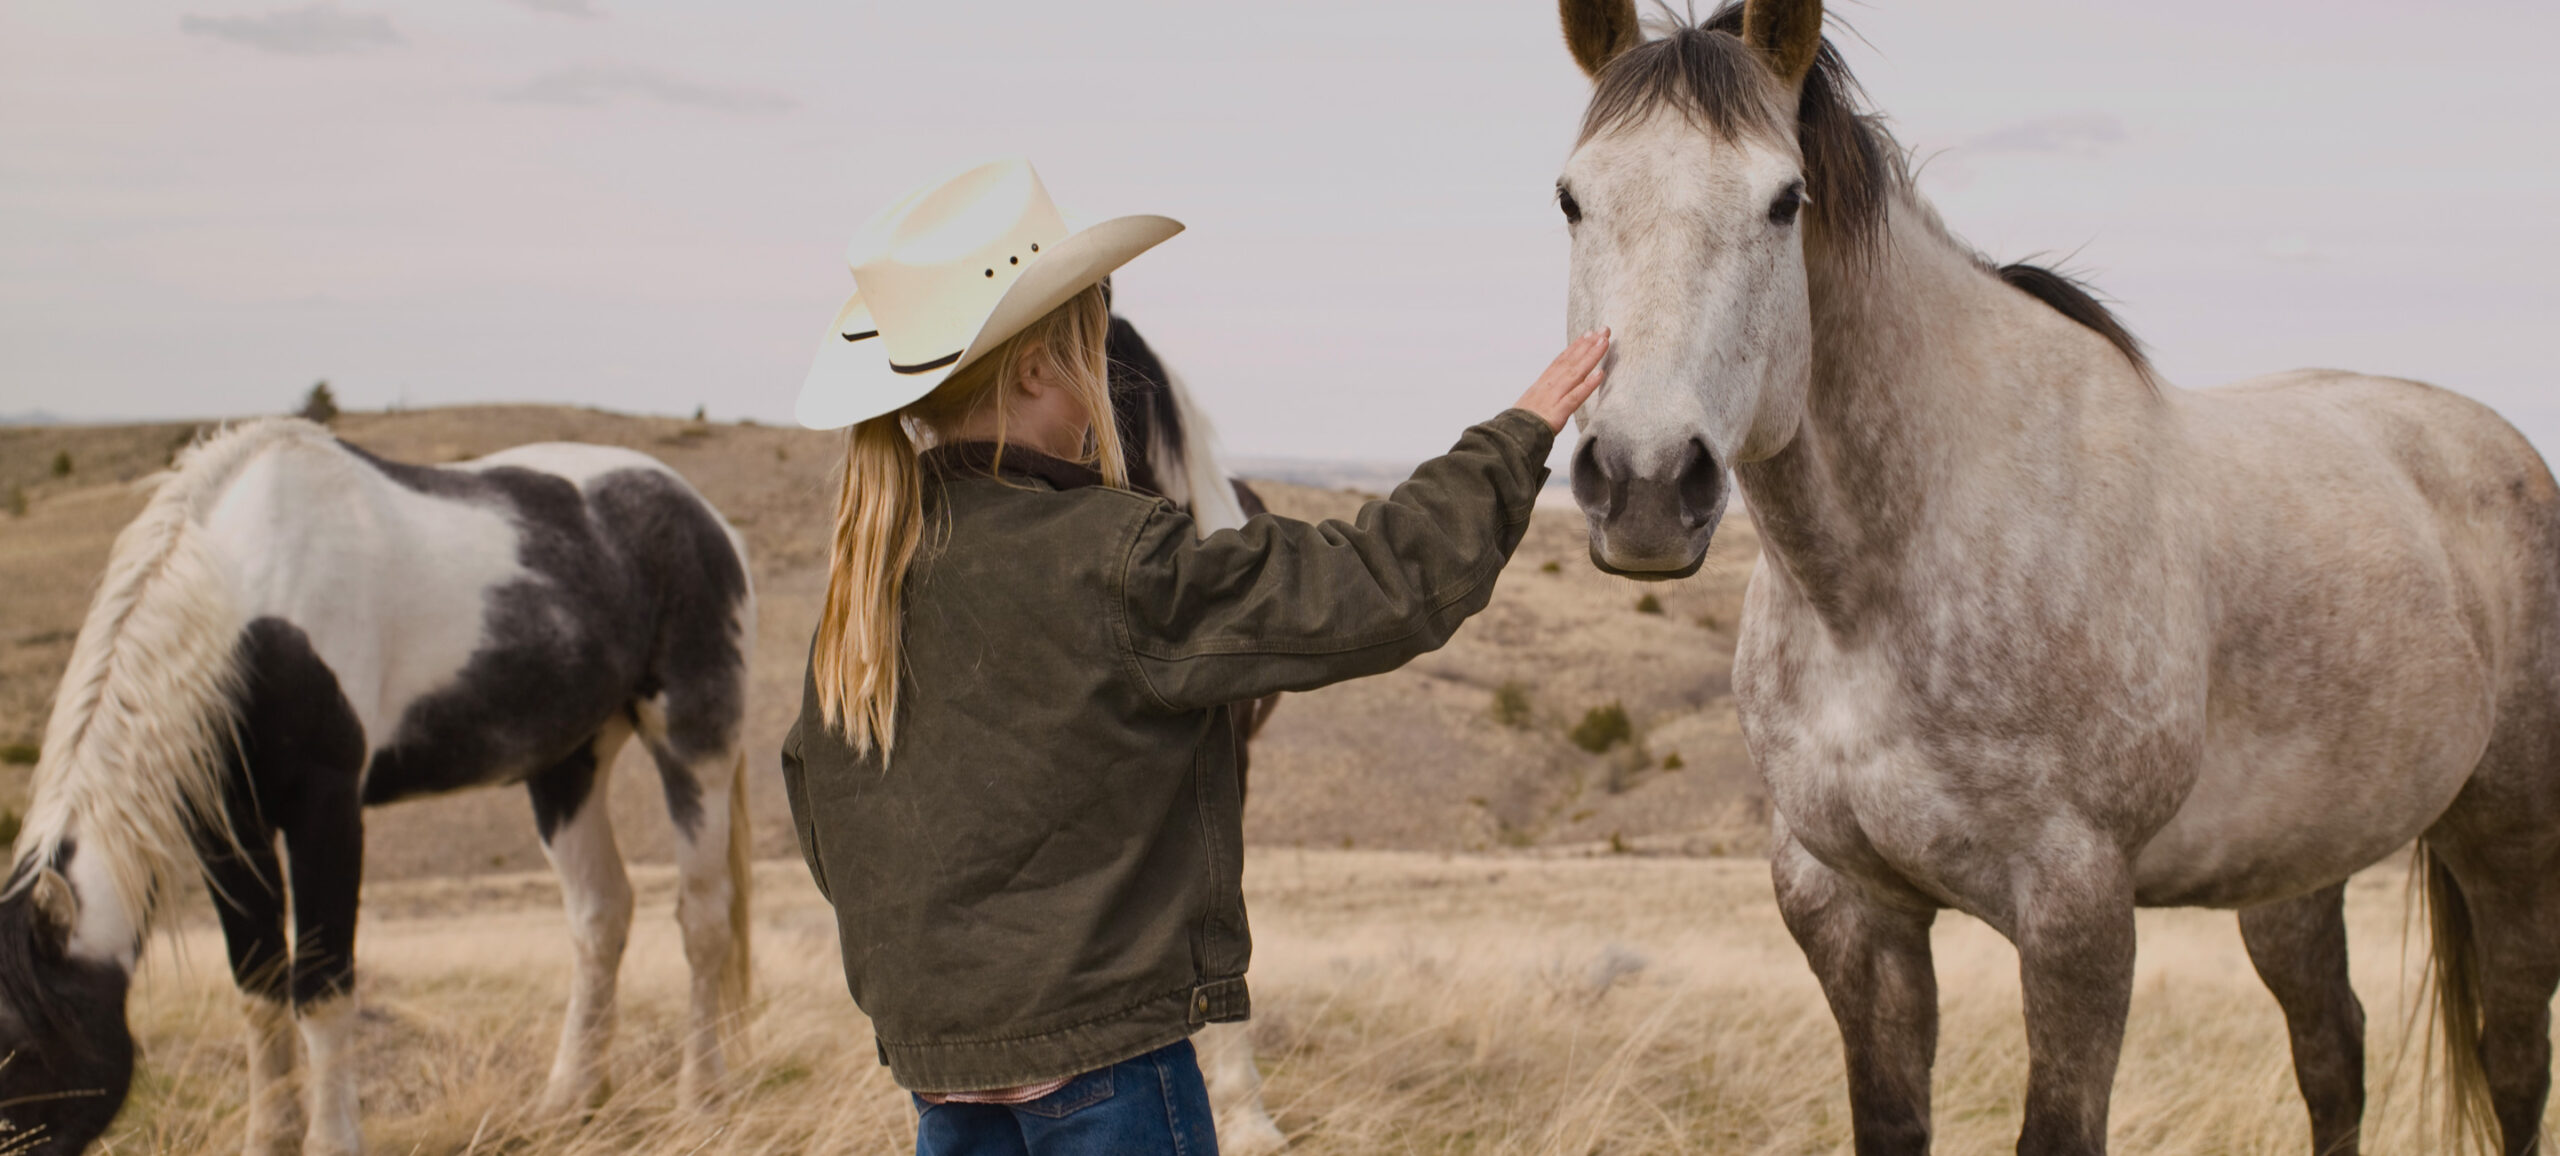 Mädchen mit Westernhut streichelt Pferd in Steppe